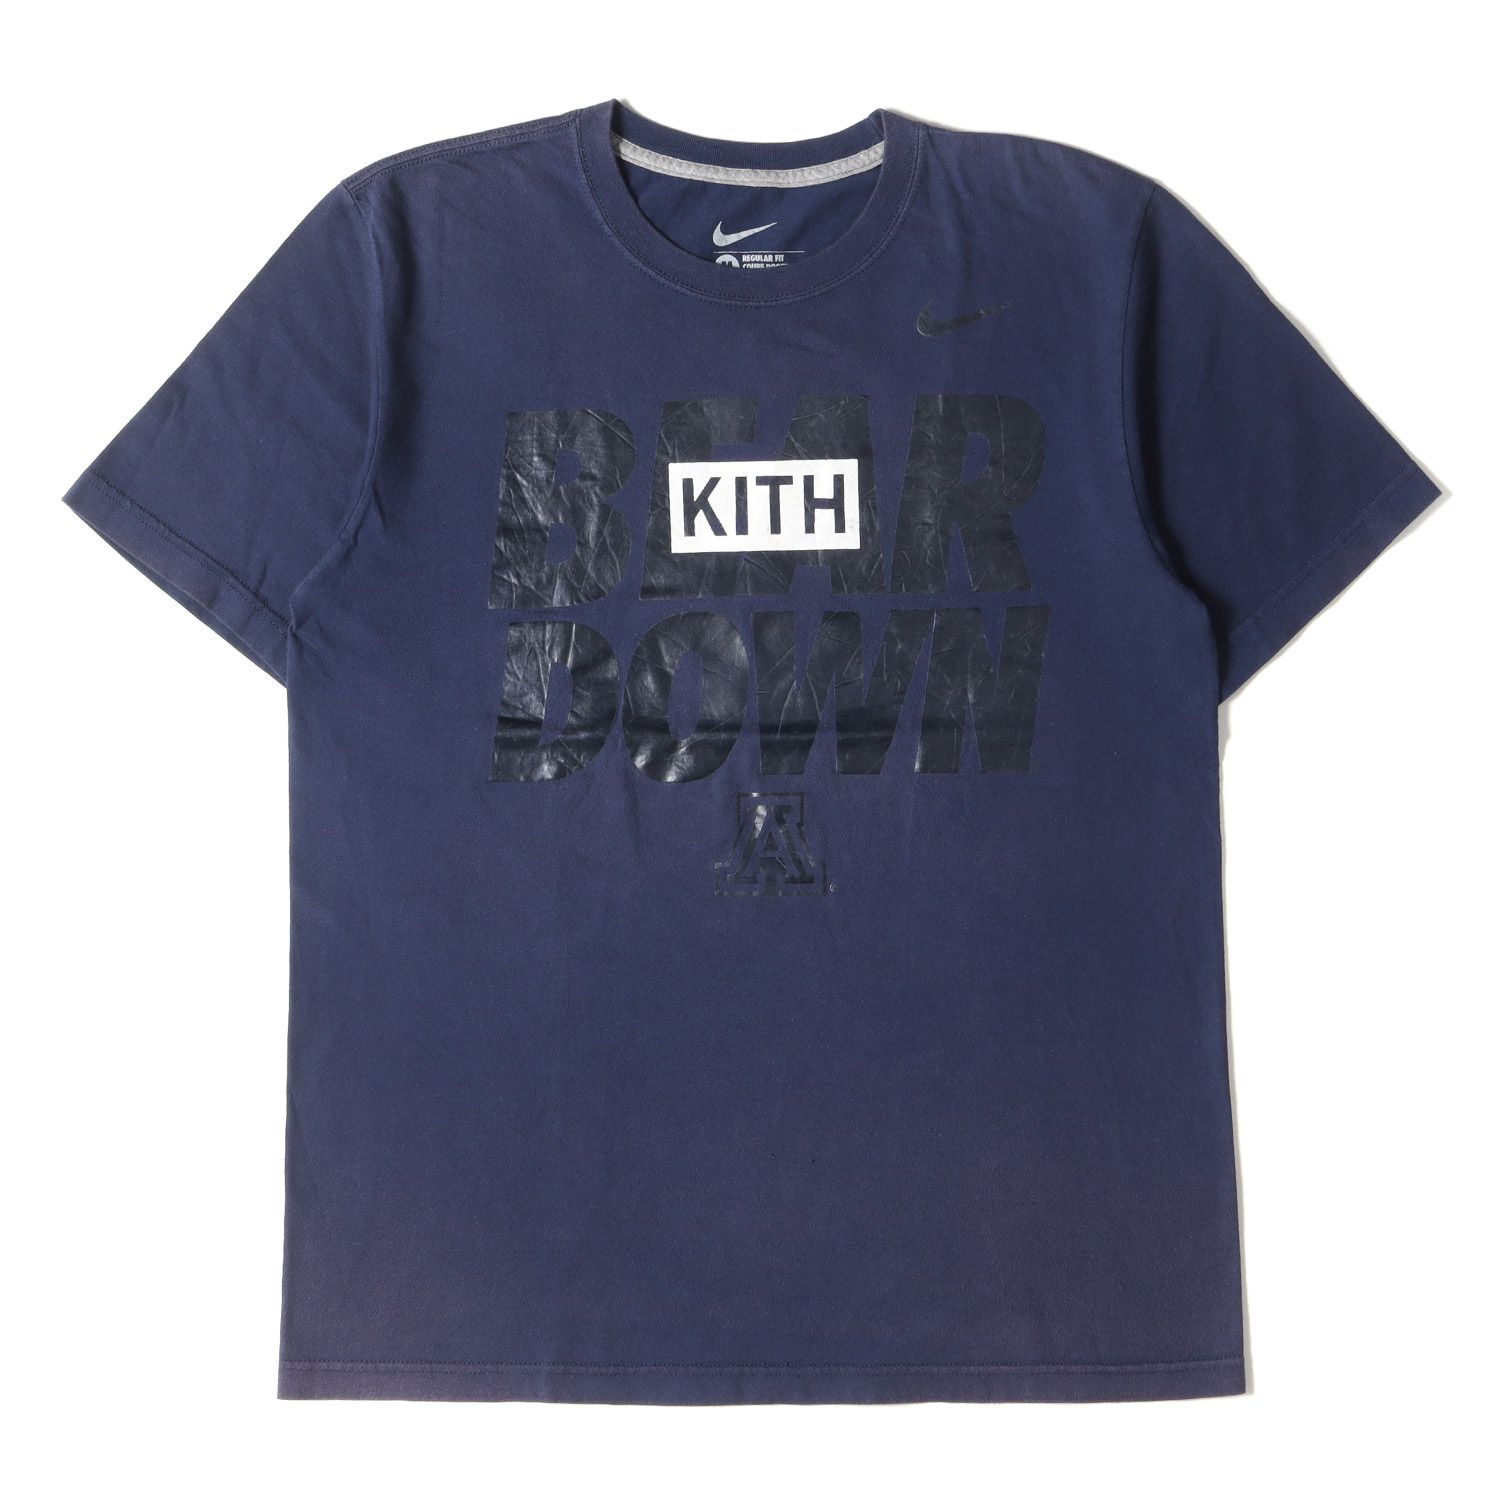 9,000円Kith Treats Tokyo Treats Sakura Tシャツ S